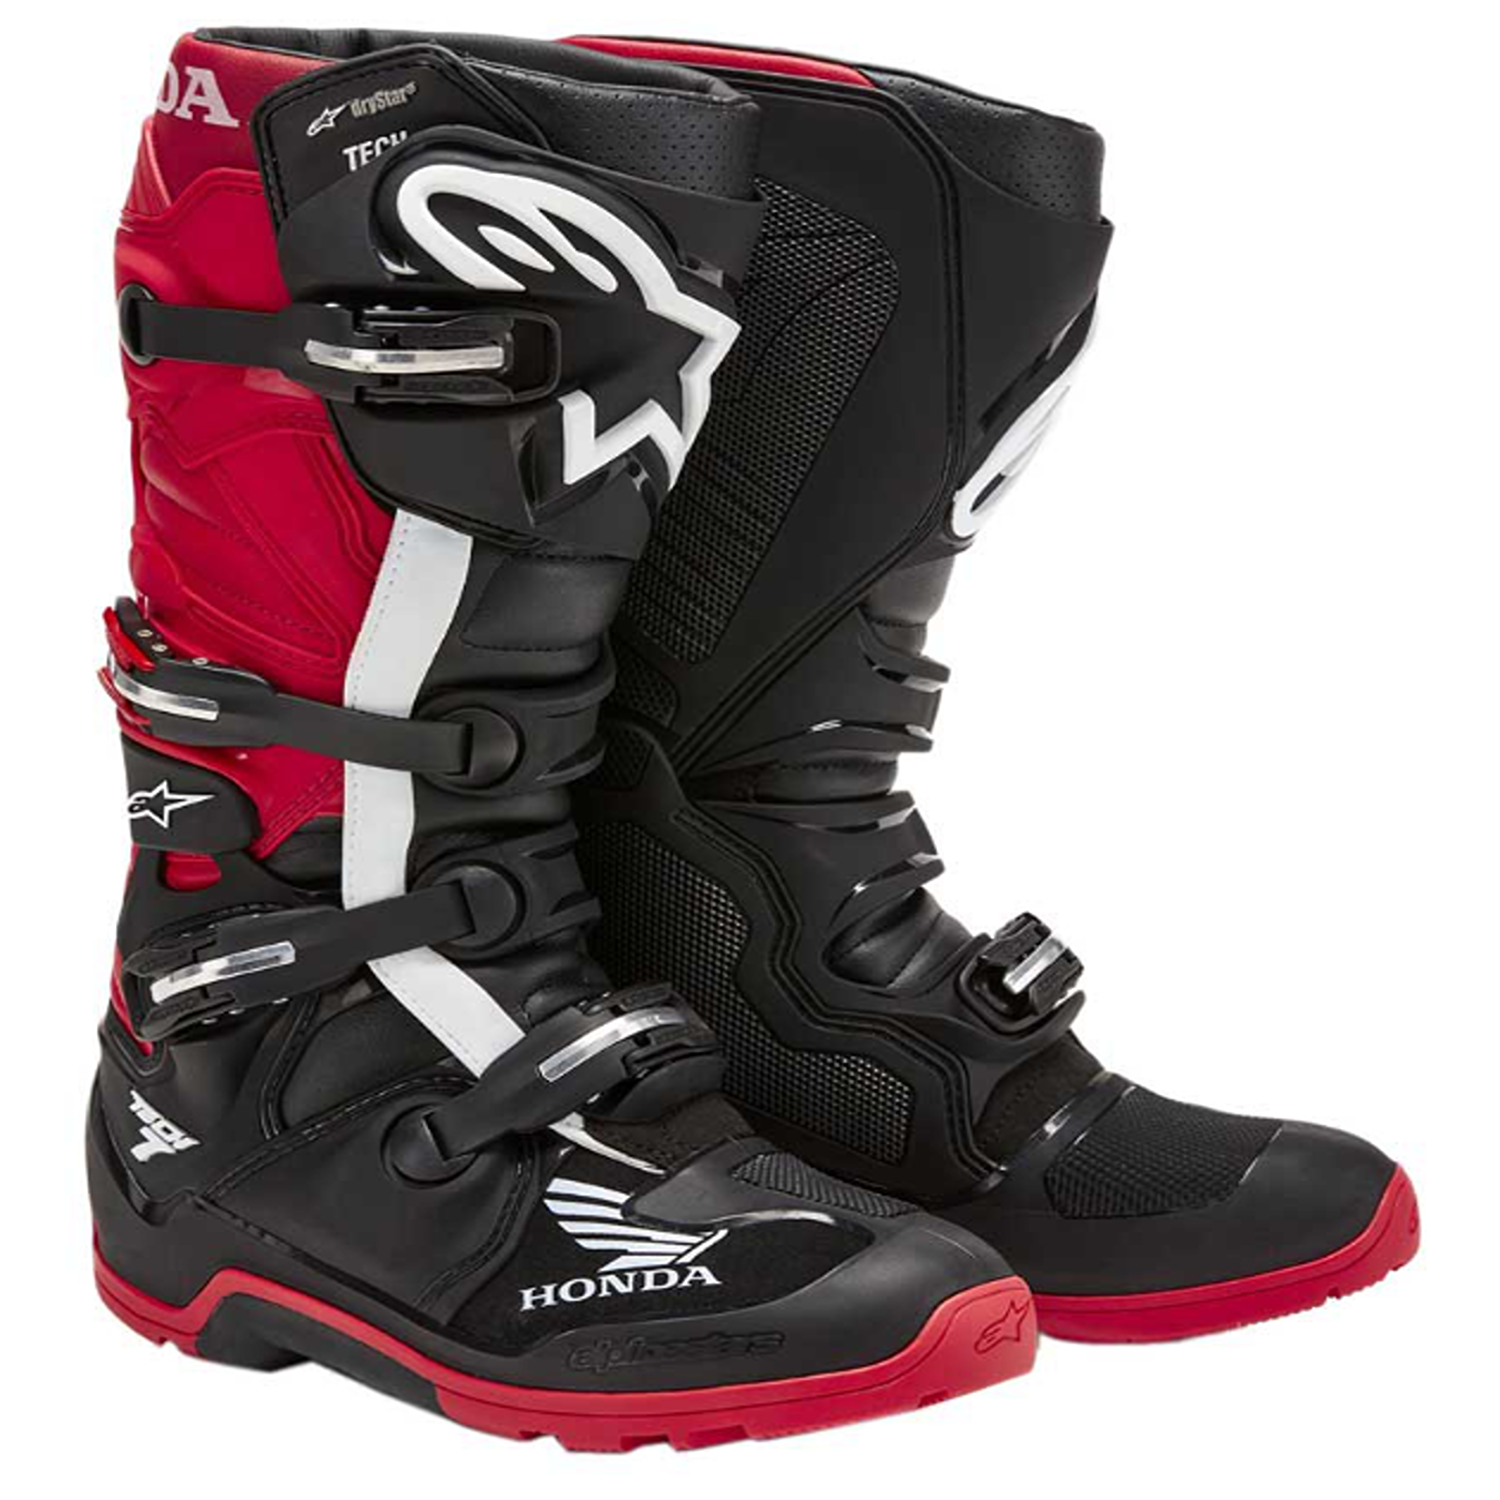 Image of Alpinestars Honda Tech 7 Enduro Drystar Boots Black Bright Red Größe US 11